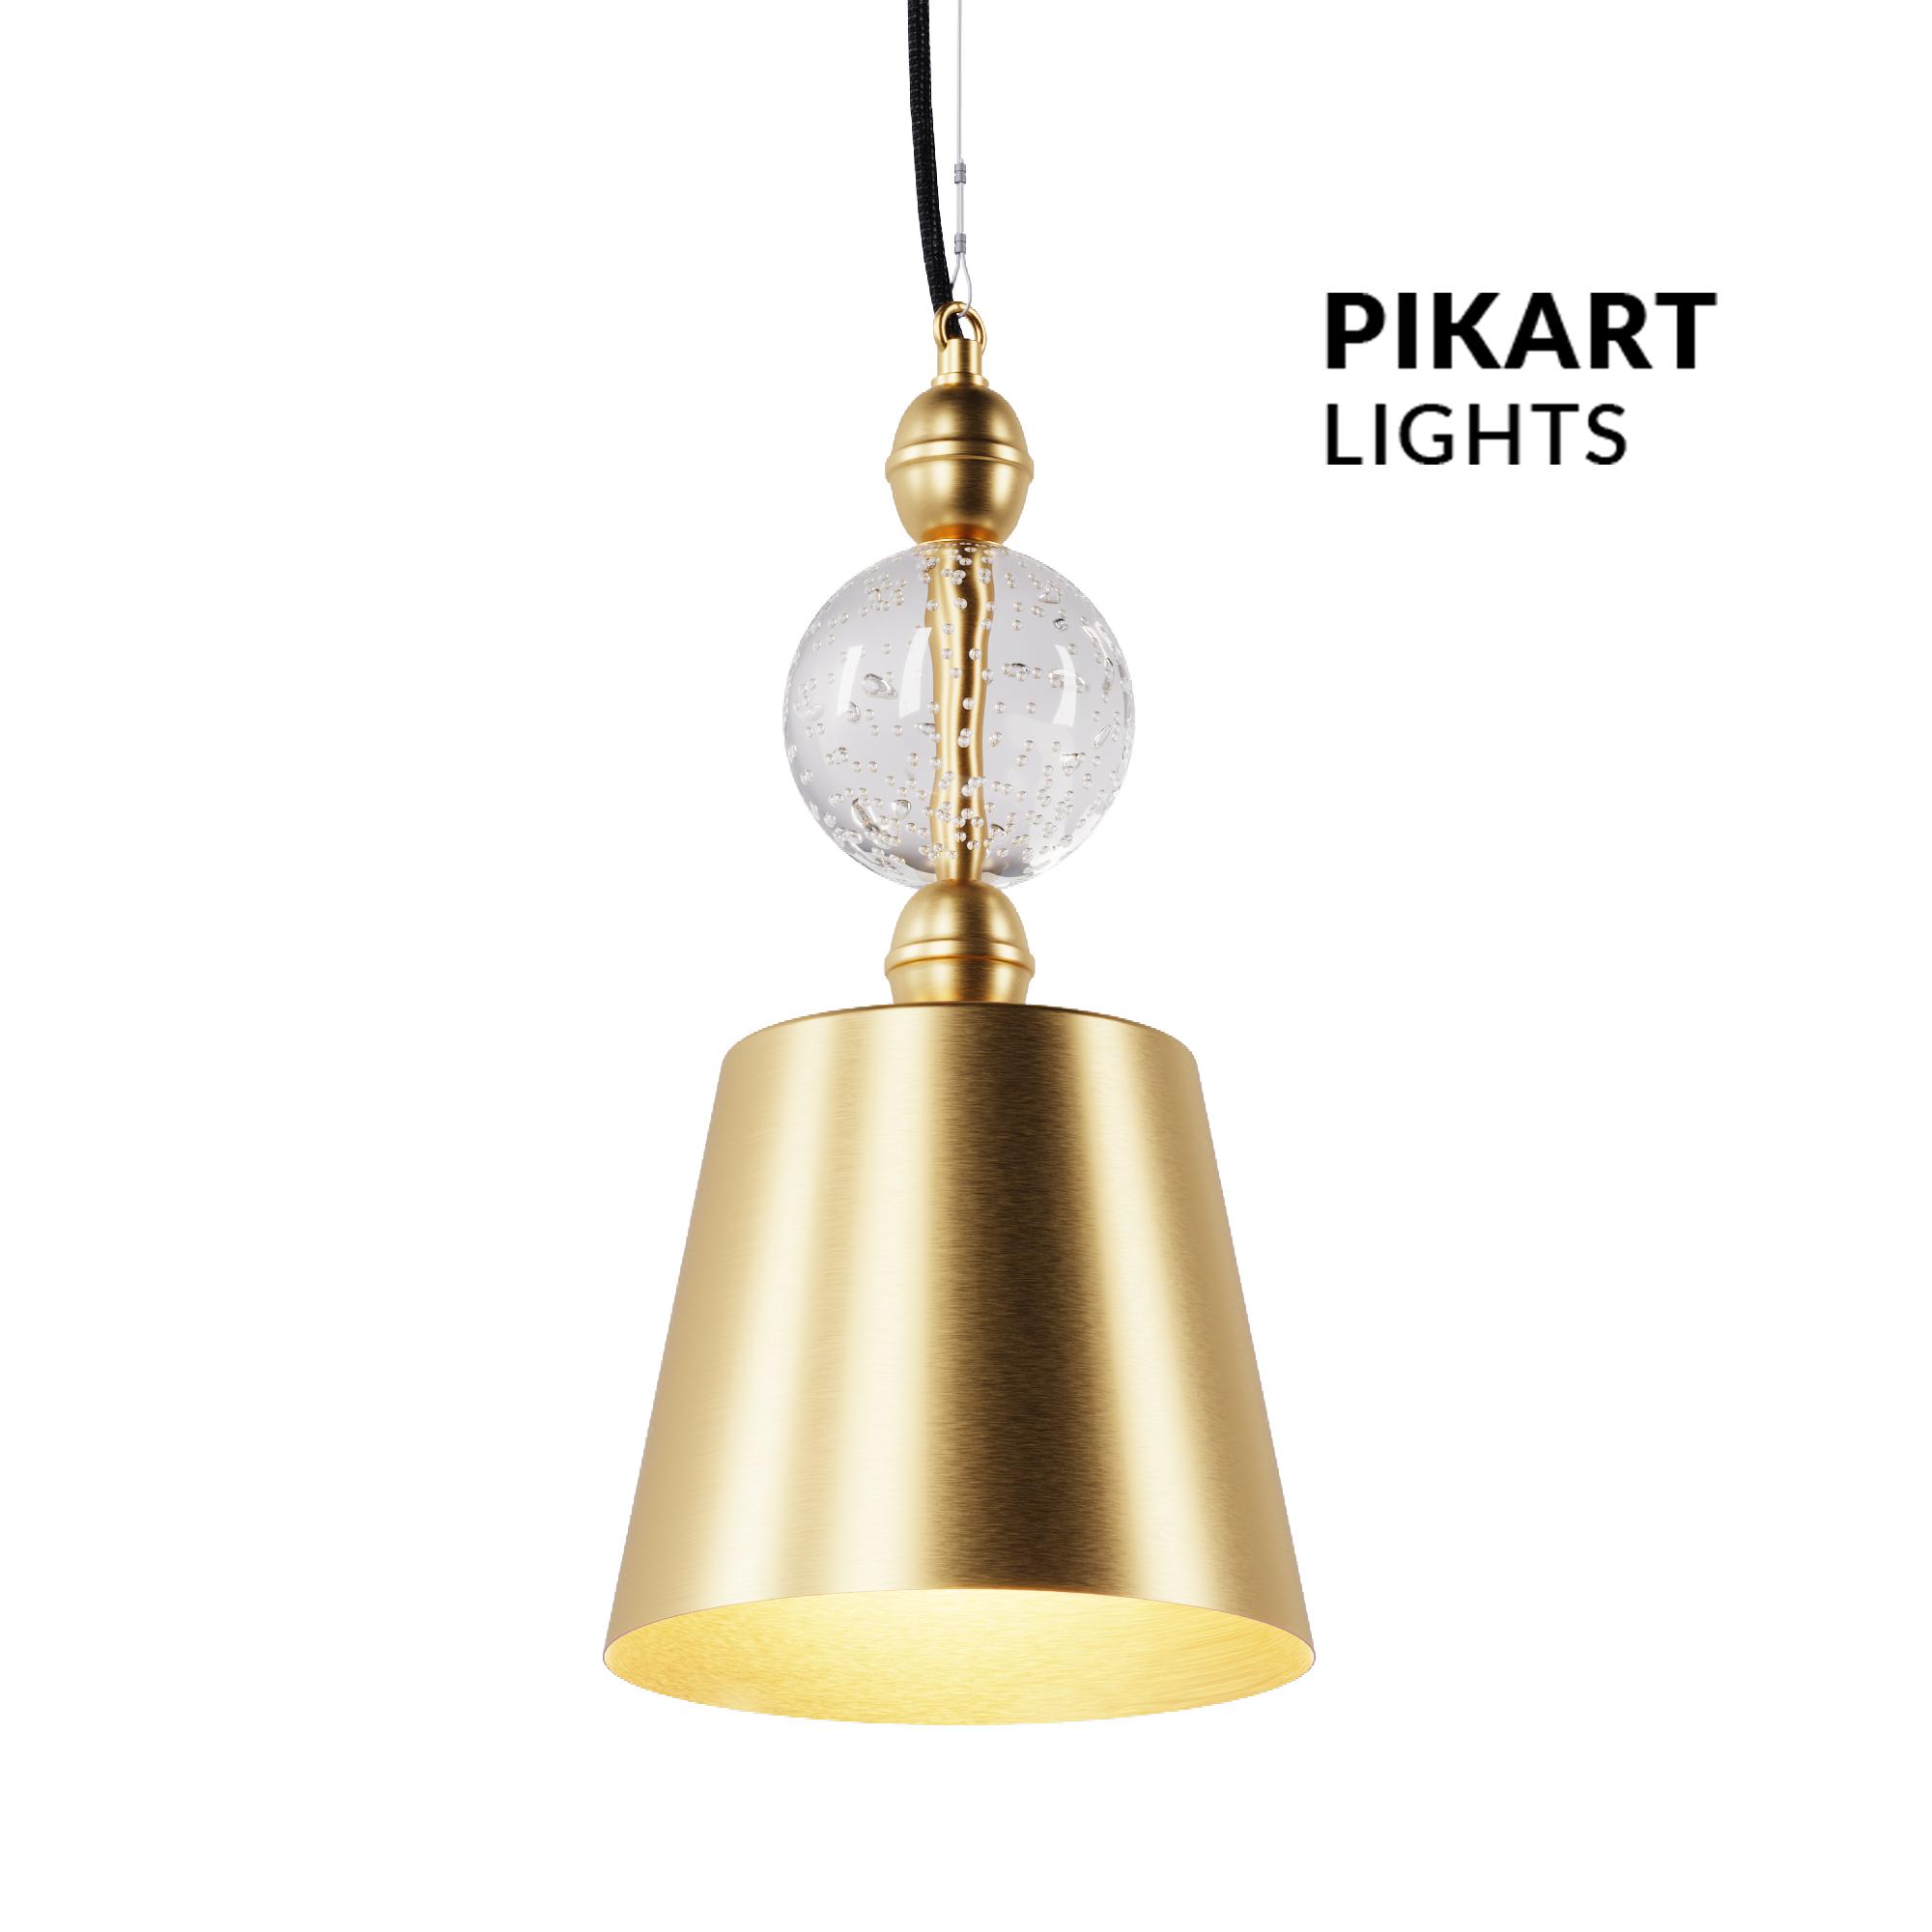 KVKZ lamp, SKU. 5933 by Pikartlights 3d model